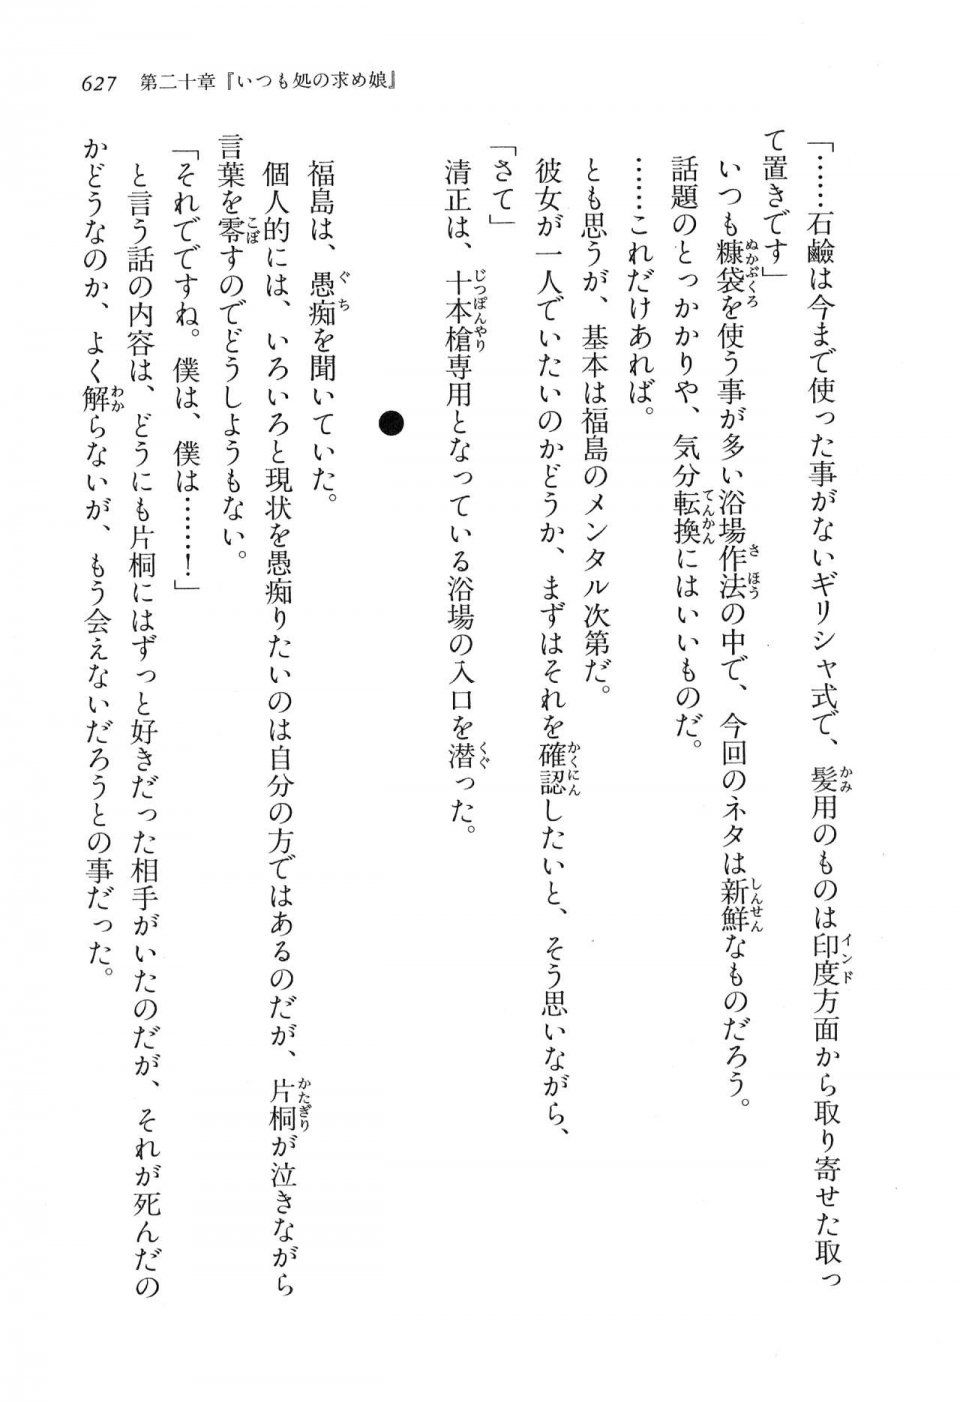 Kyoukai Senjou no Horizon LN Vol 16(7A) - Photo #627